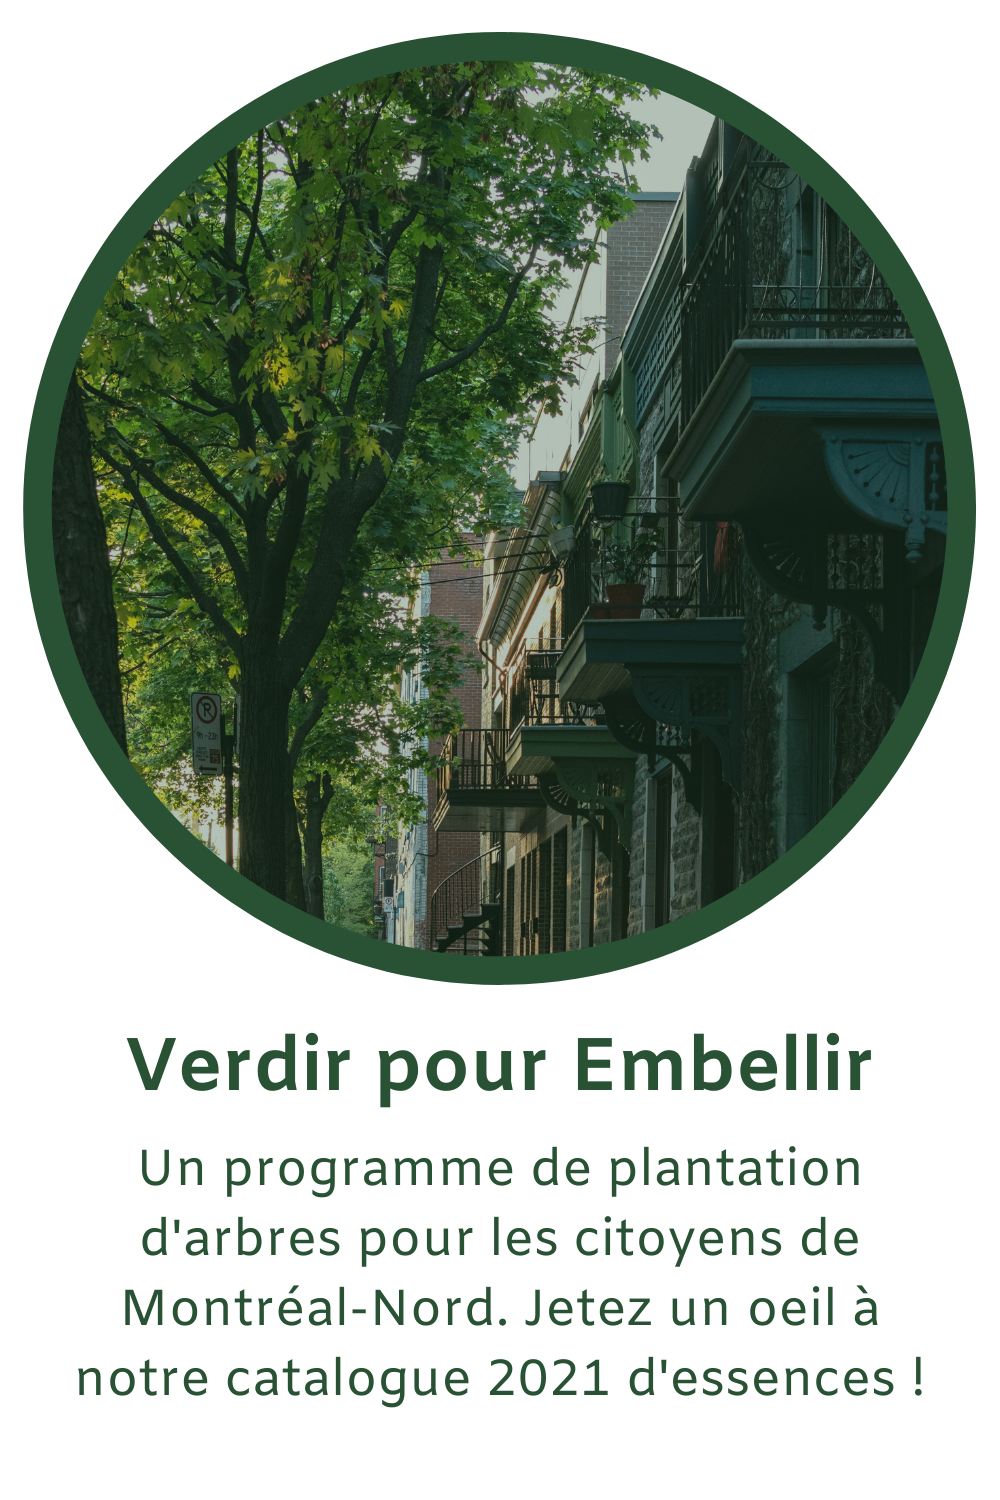 Un programme de plantation d'arbres pour améliorer le cadre de vie des citoyens de l'arrondissment et augmenter la canopée de Montréal-Nord.